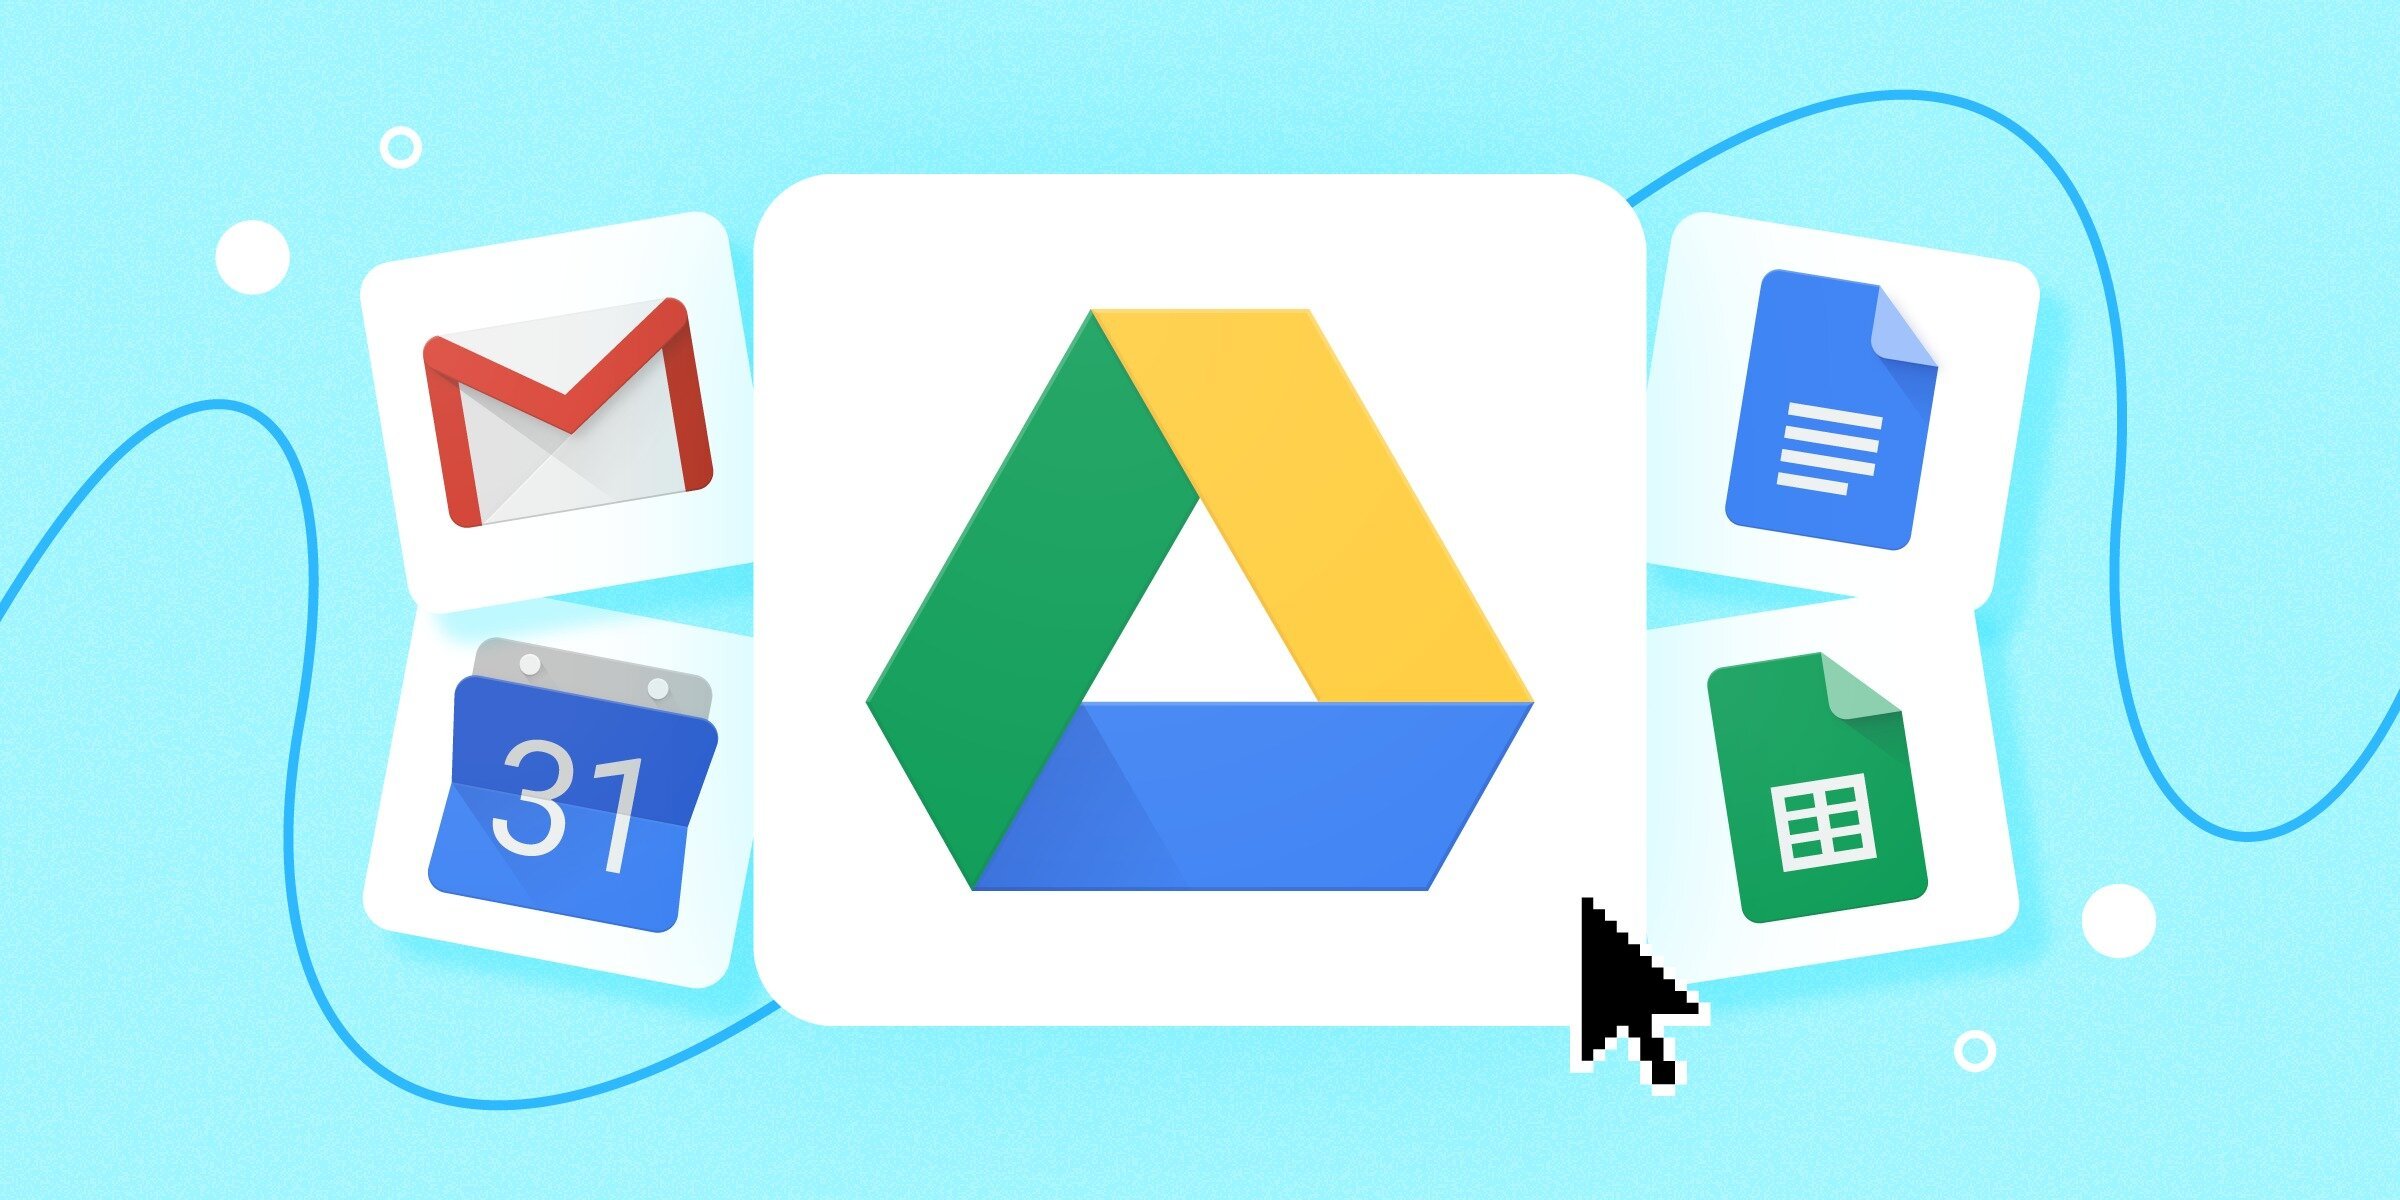 Αφού αναστάτωσε τις επιχειρήσεις, το μυστικό ανώτατο όριο αρχείων του Google Drive αποτελεί παρελθόν